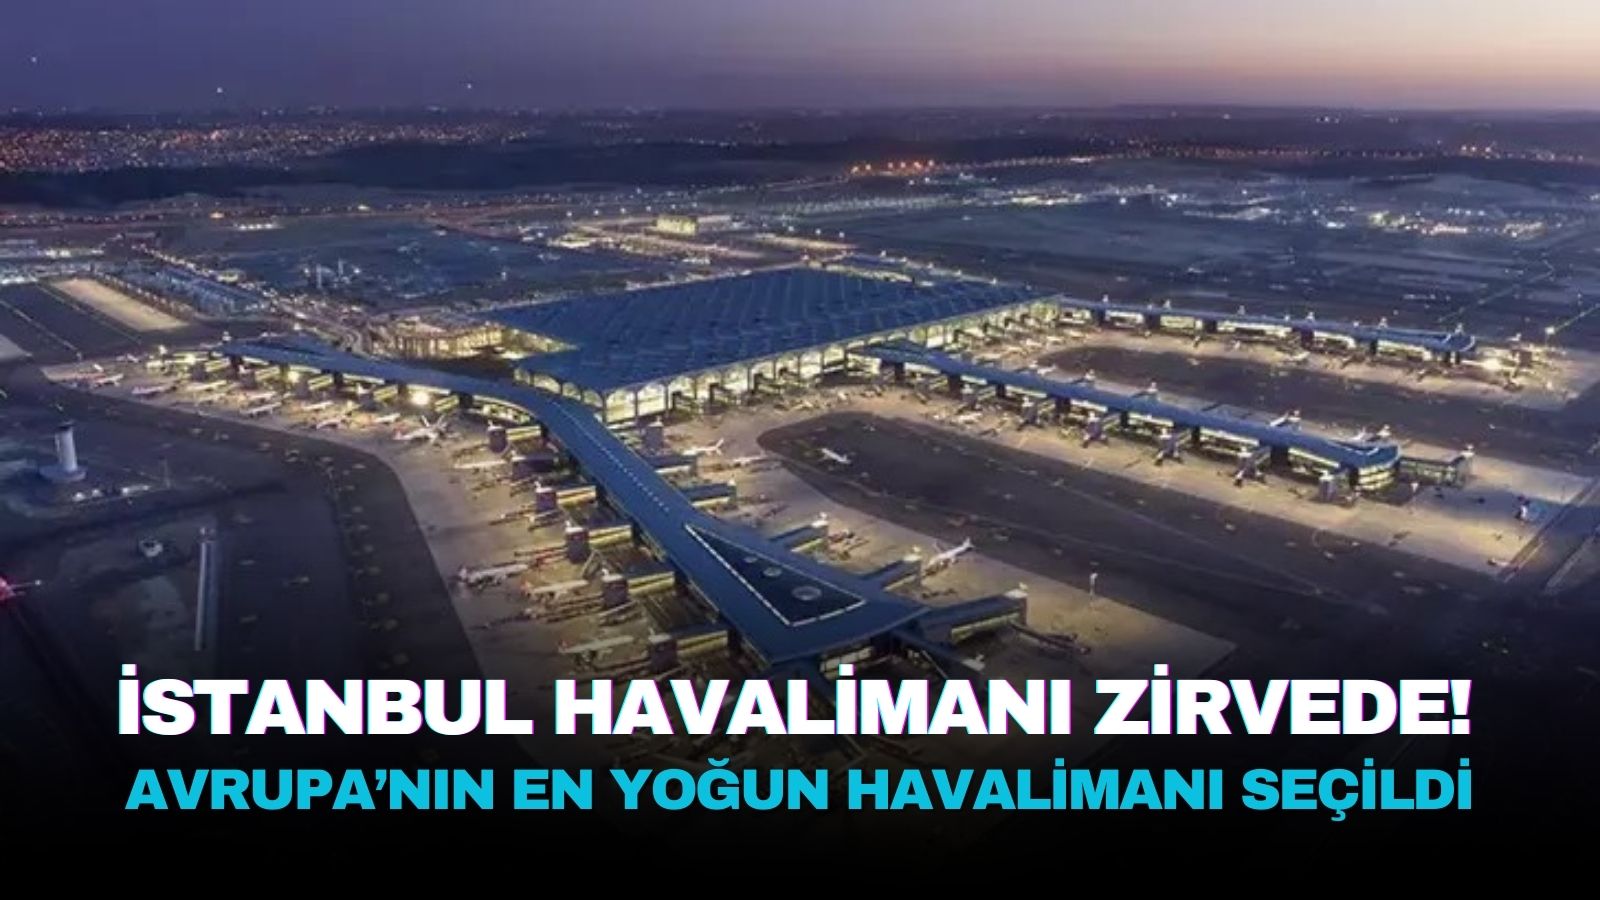 istanbul-havalimani-avrupadaki-en-yogun-havalimani-oldu